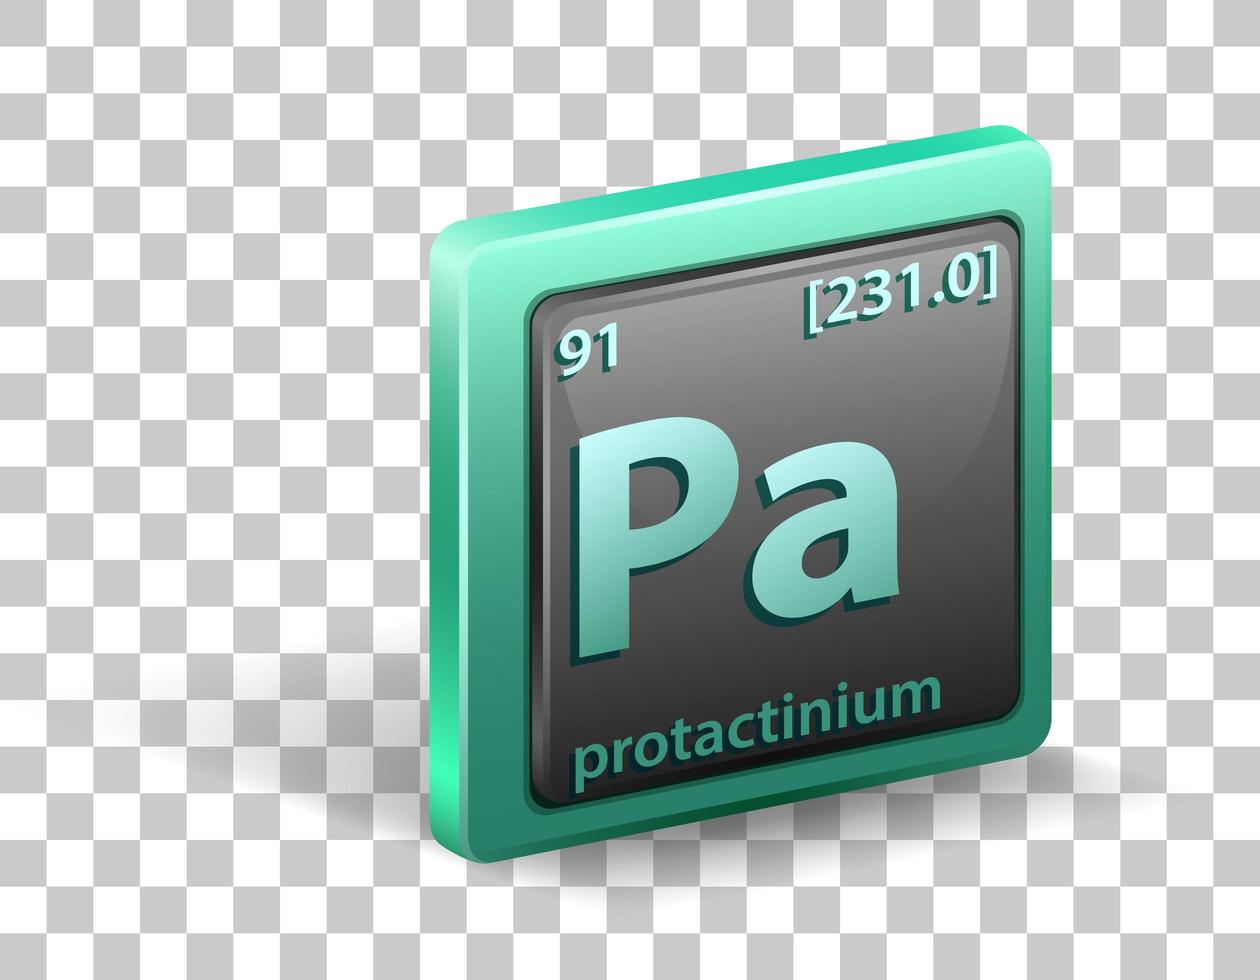 chemisches Protactinium-Element. chemisches Symbol mit Ordnungszahl und Atommasse. vektor